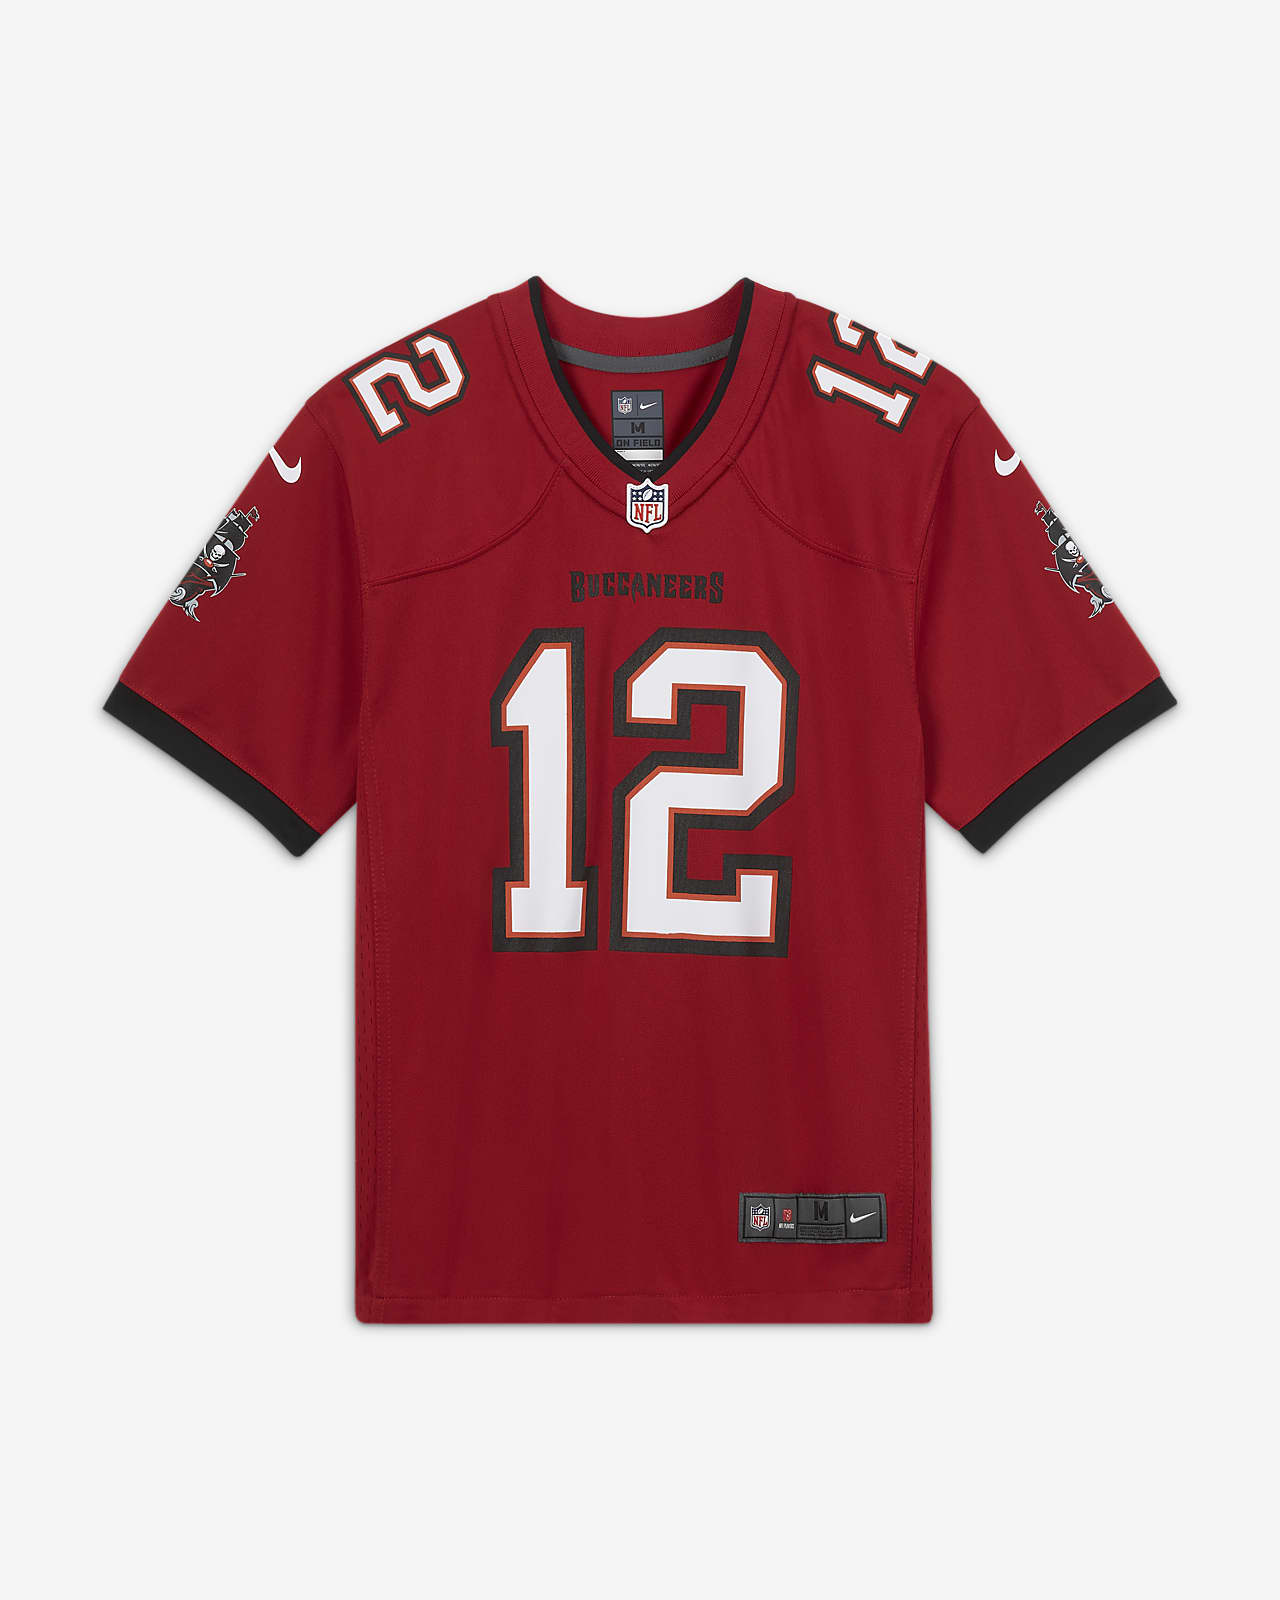 NFL Tampa Bay Buccaneers (Tom Brady) Camiseta de fútbol americano del partido - Niño/a - Rojo